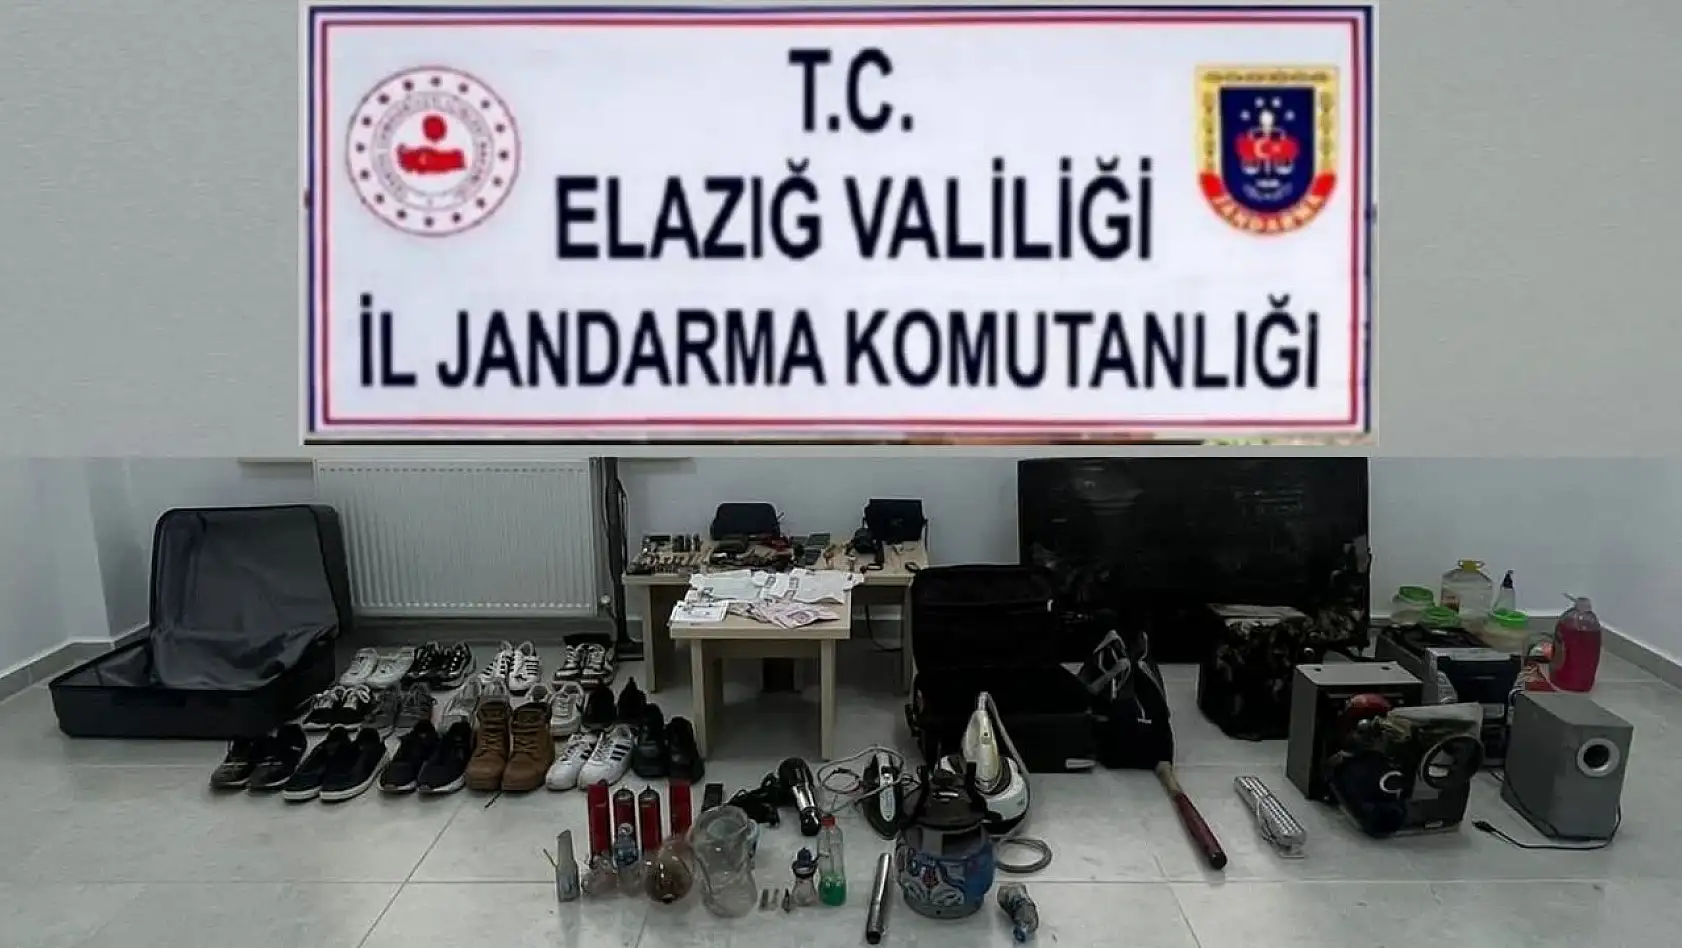 Elazığ'da 7 hırsızlık olayına karışan 2 kişi yakalandı